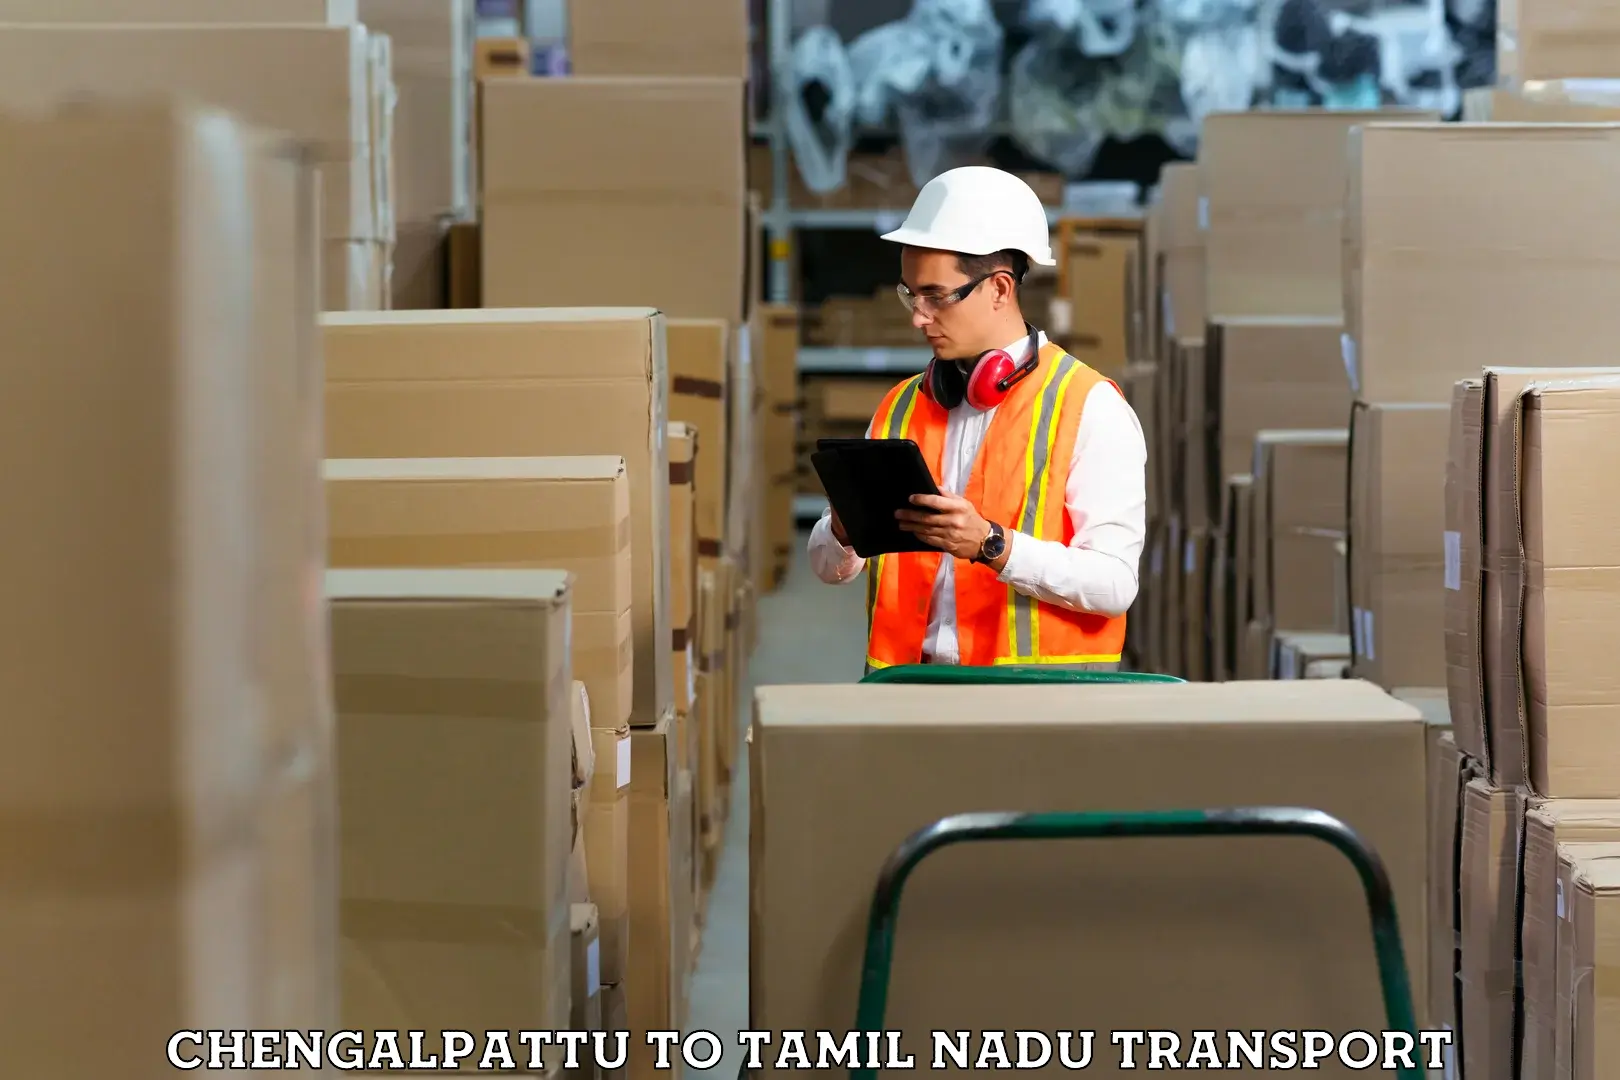 Truck transport companies in India Chengalpattu to Surandai